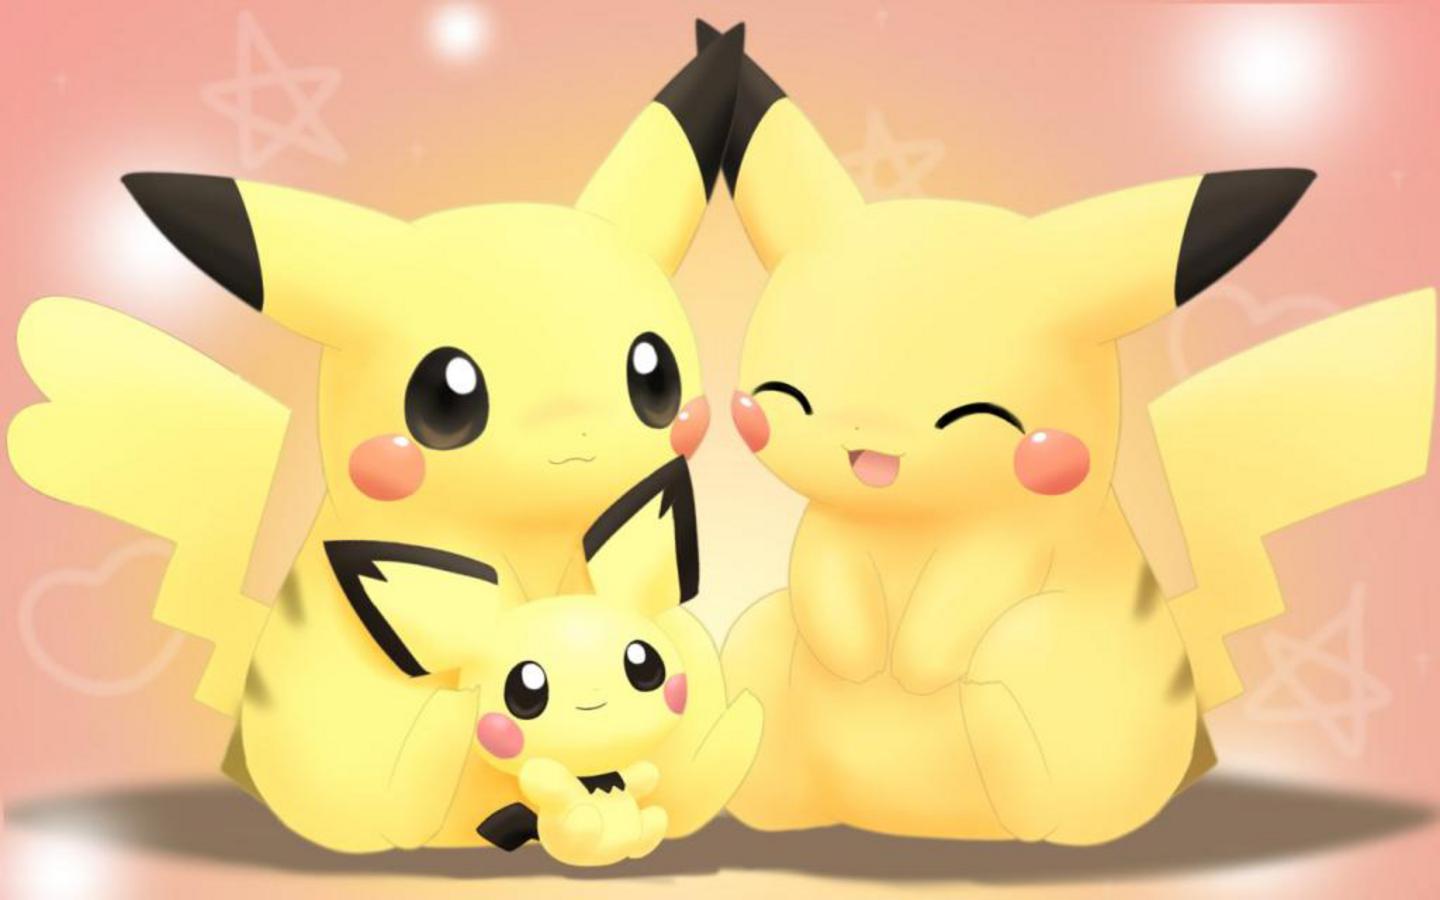 48+] Cute Pikachu Wallpapers - WallpaperSafari